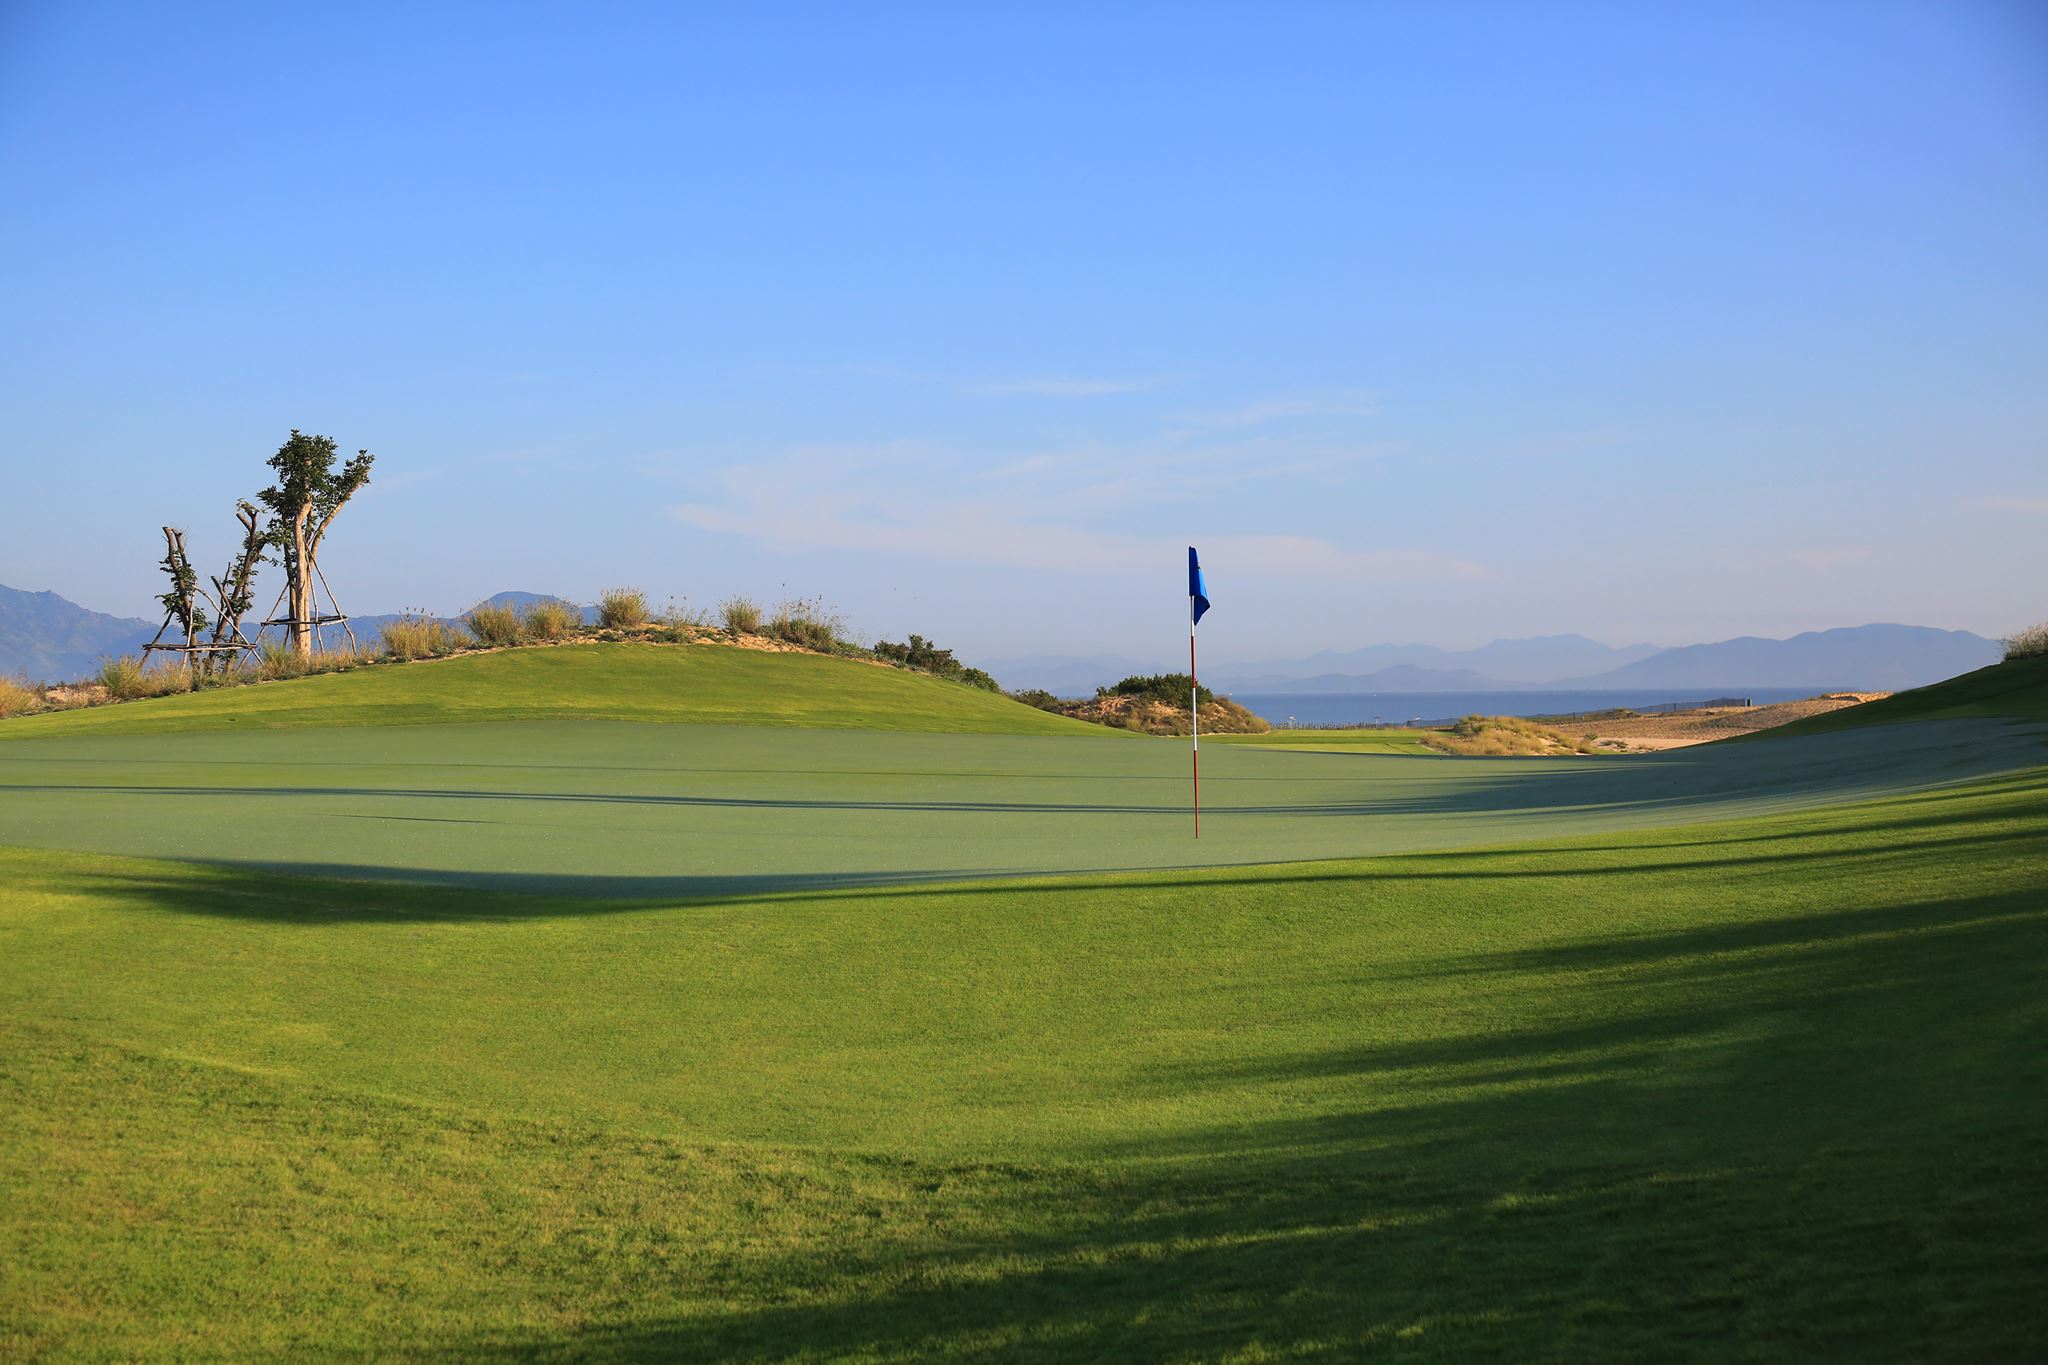 Thêm một sân golf do huyền thoại Greg Norman thiết kế sắp mở cửa tại Việt Nam